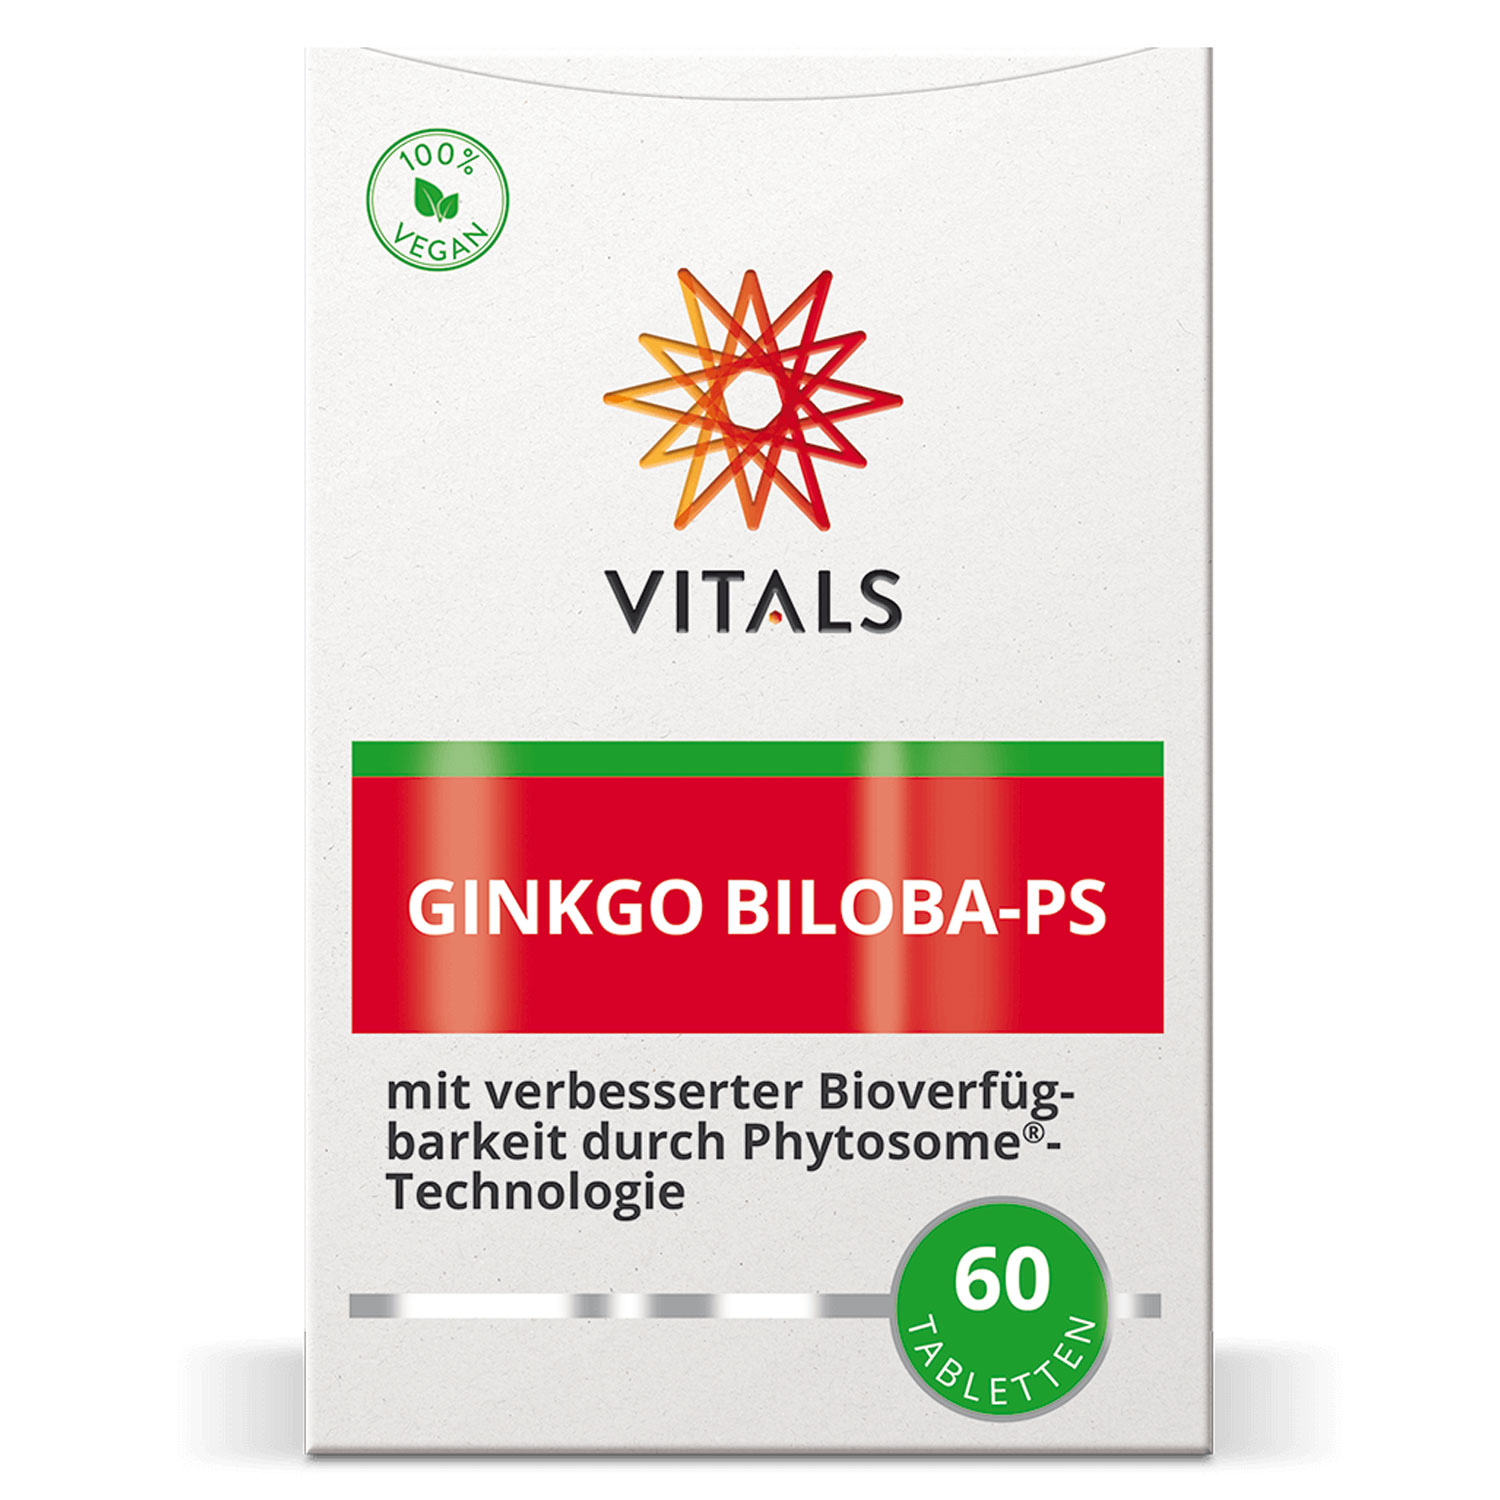 Ginkgo Biloba-PS von Vitals - Verpackung